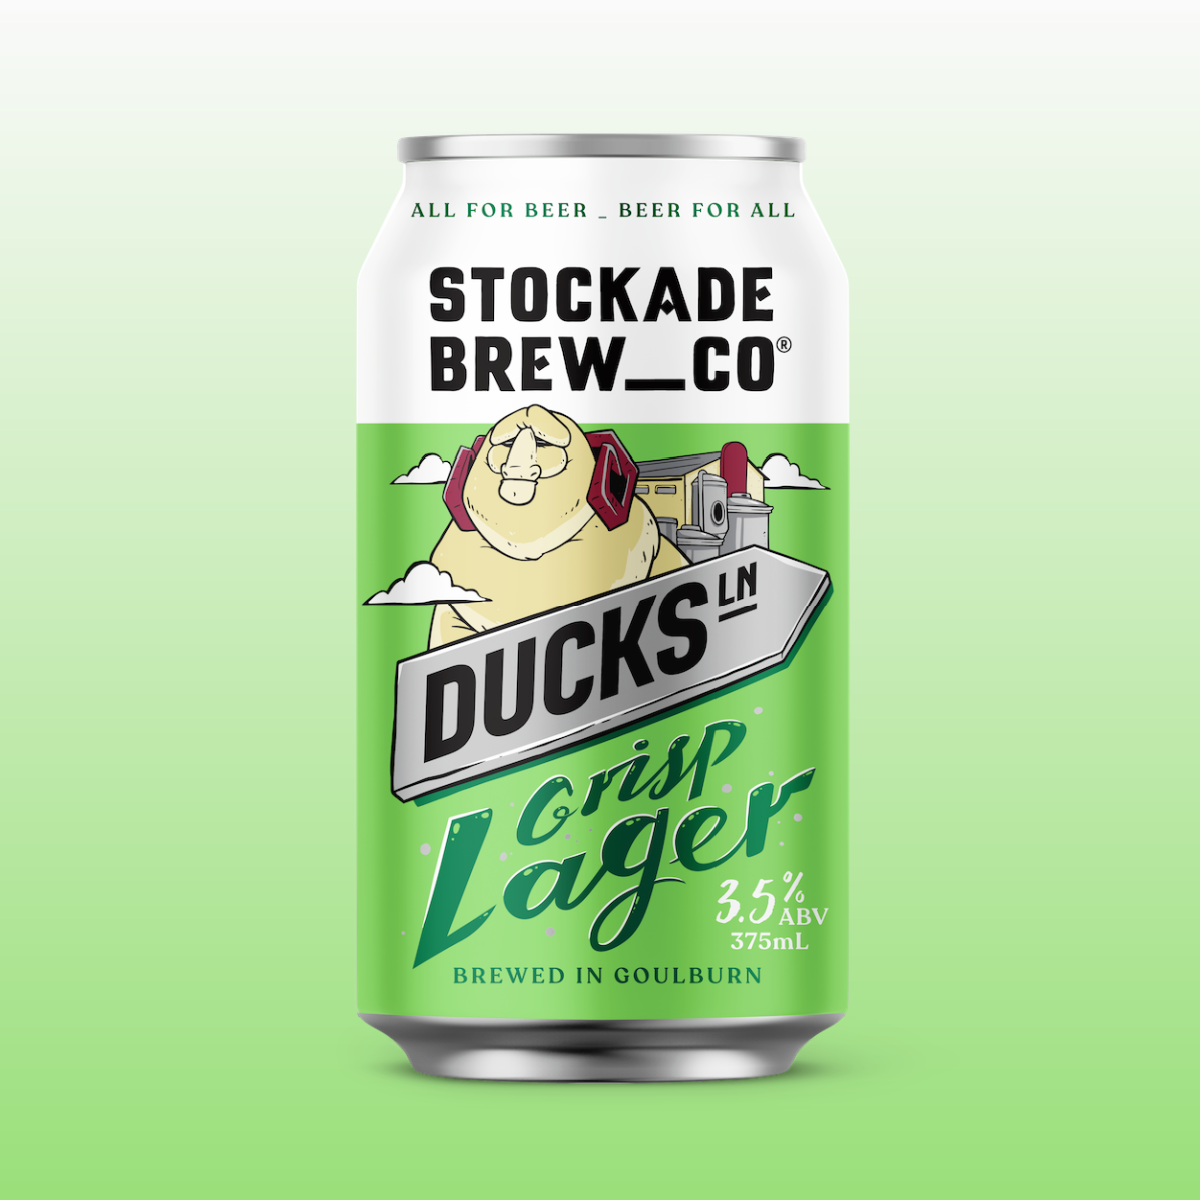 Stockade-Brew-Co-Ducks-Lane-Tile.png